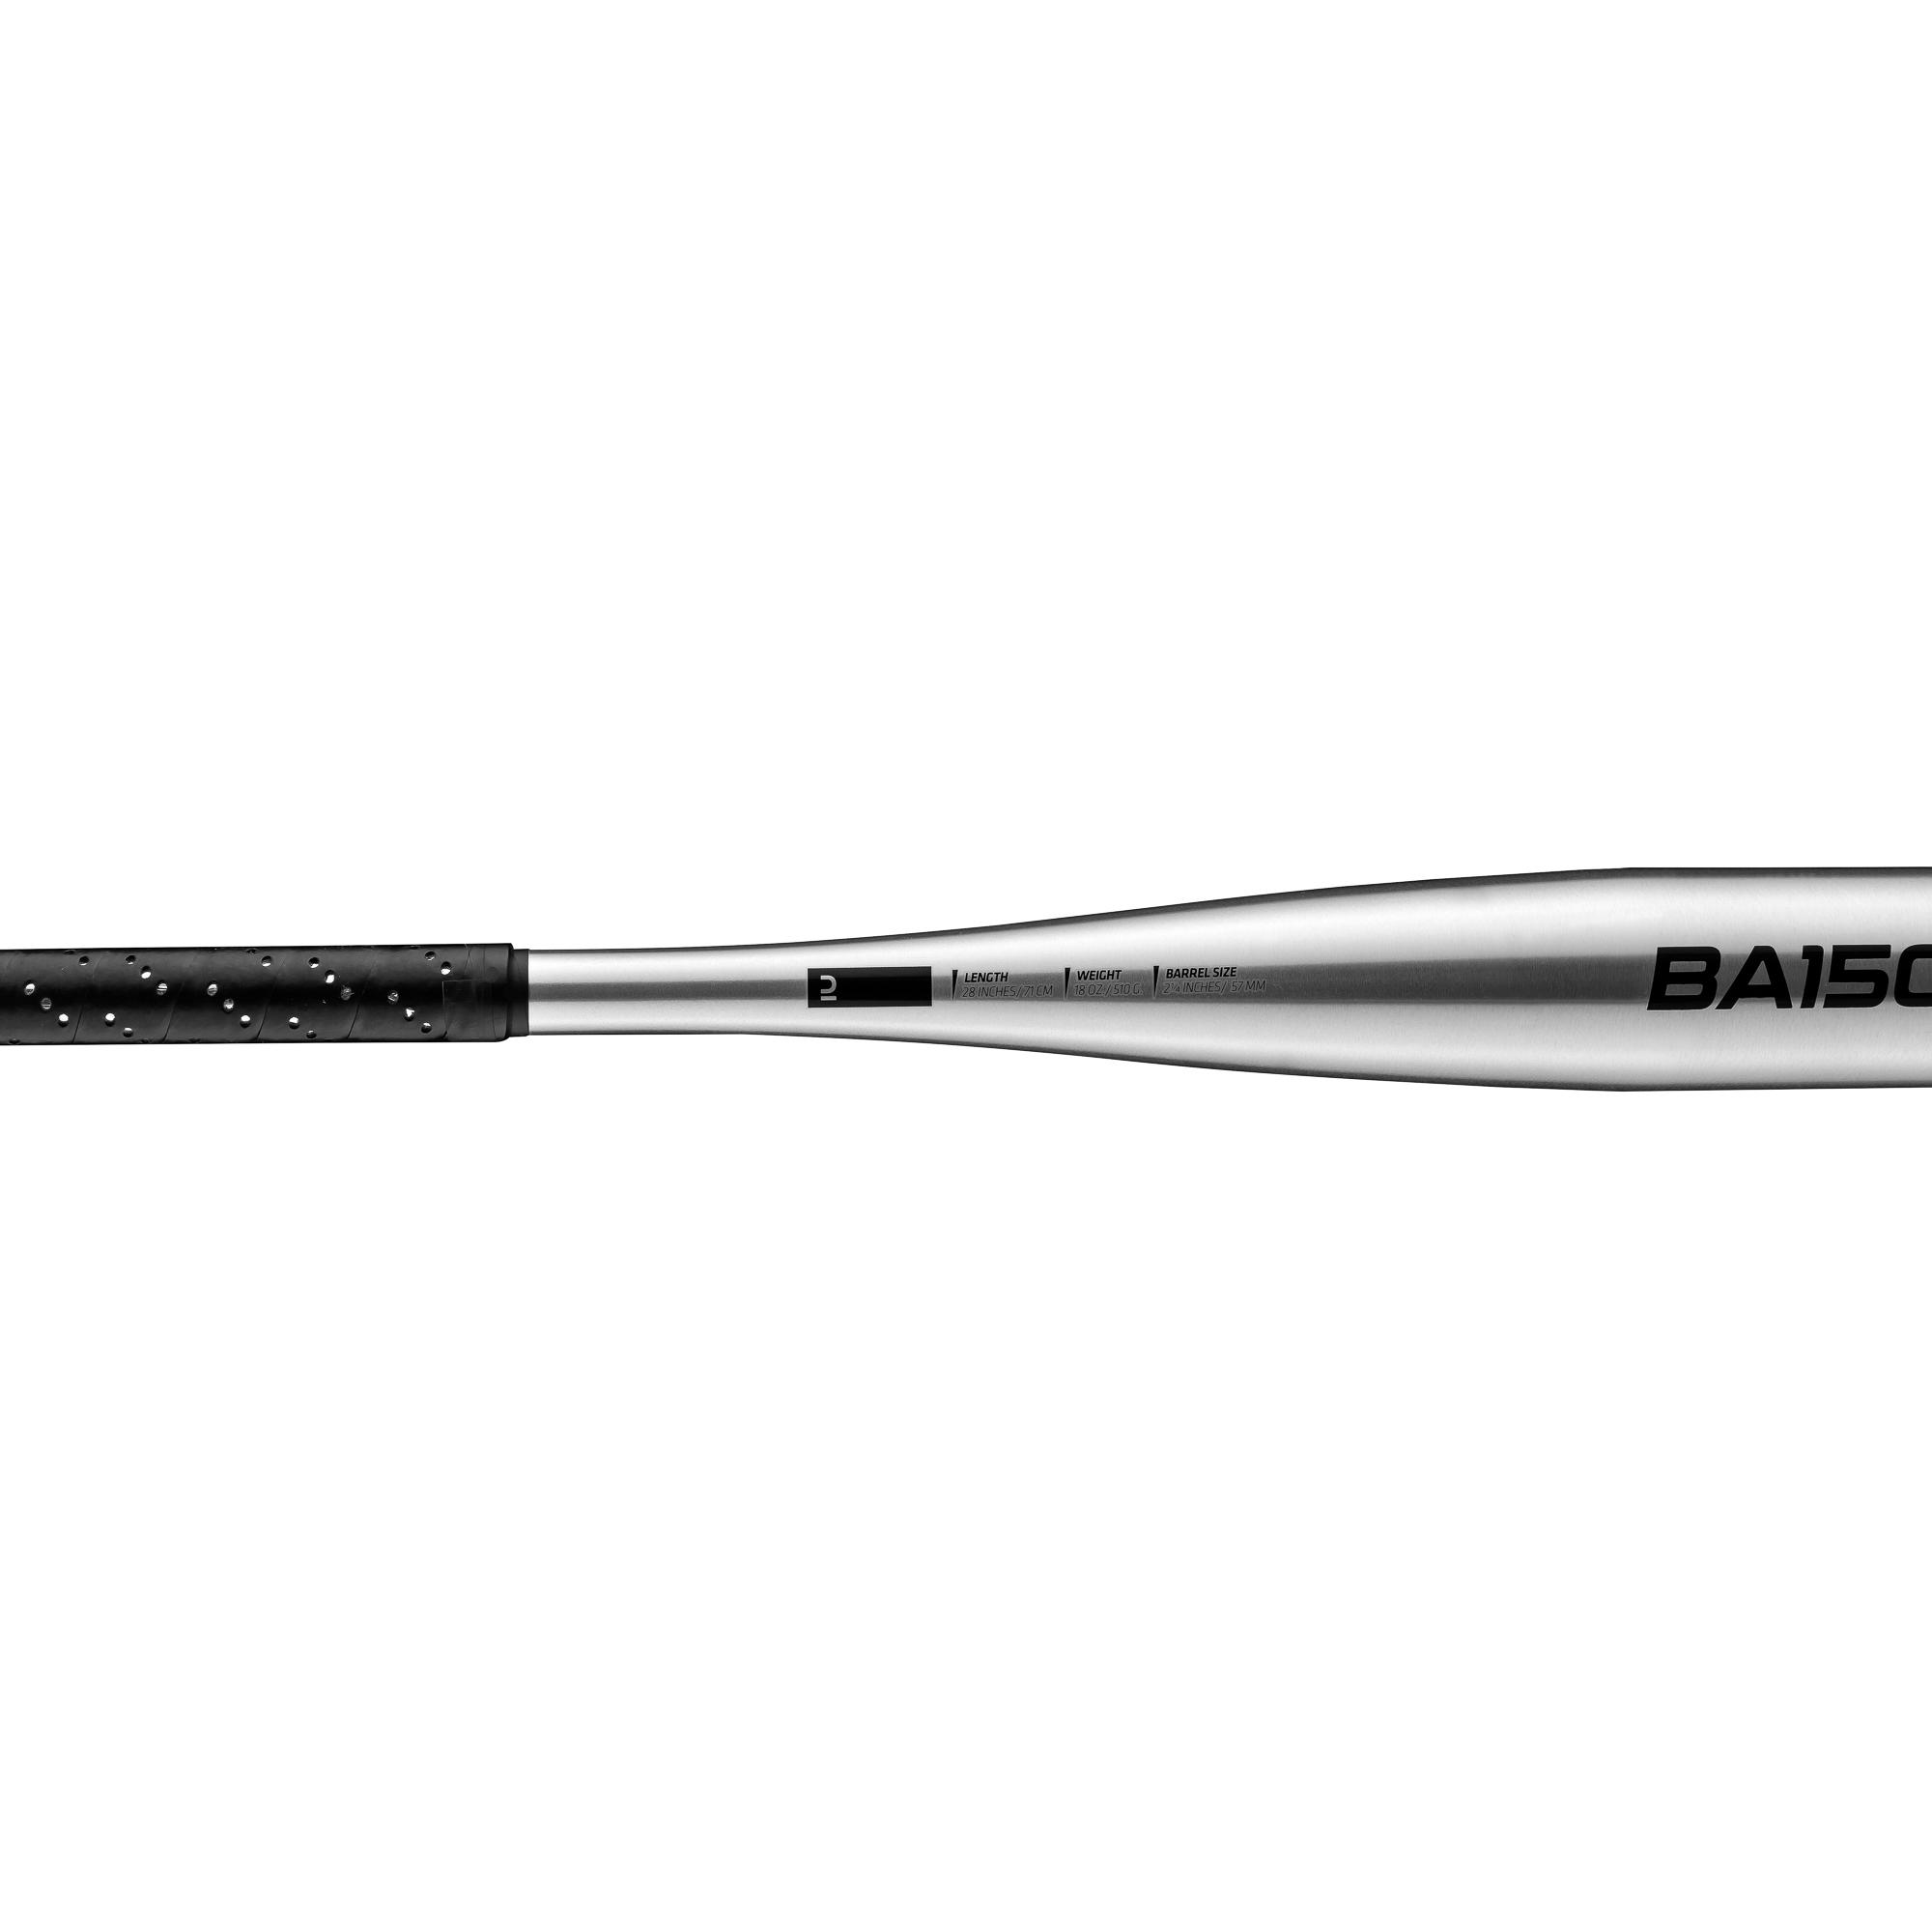 Baseball Bat - BA 150 - KIPSTA